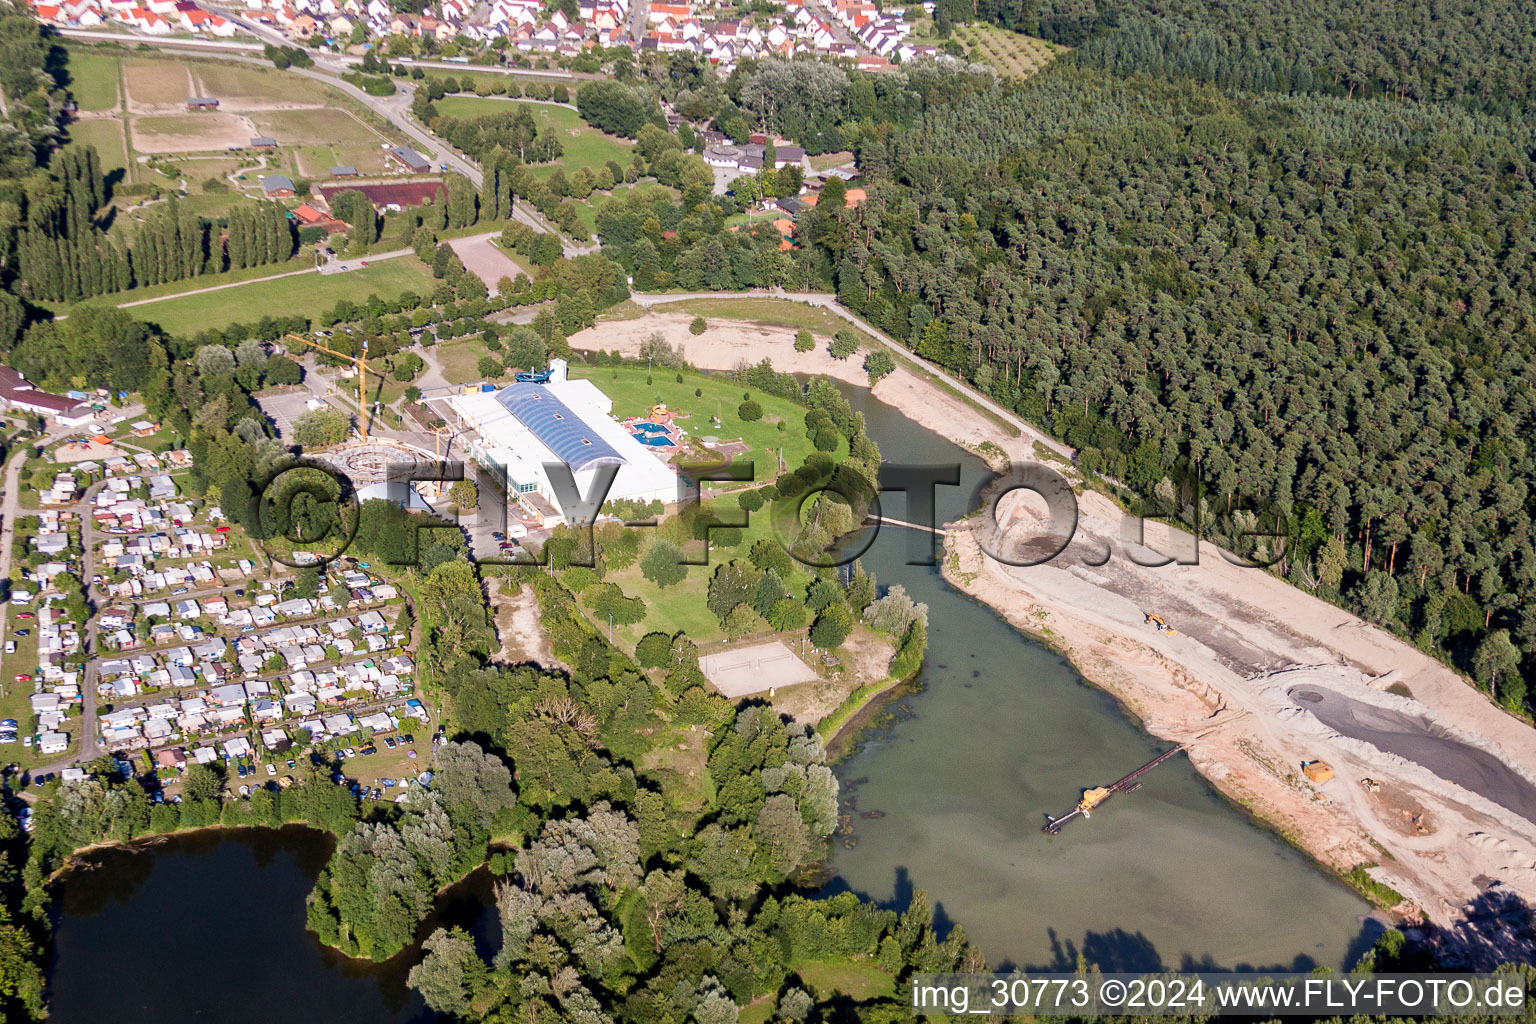 Vue aérienne de Zones riveraines sur la plage de sable de la piscine extérieure Moby Dick à Rülzheim dans le département Rhénanie-Palatinat, Allemagne